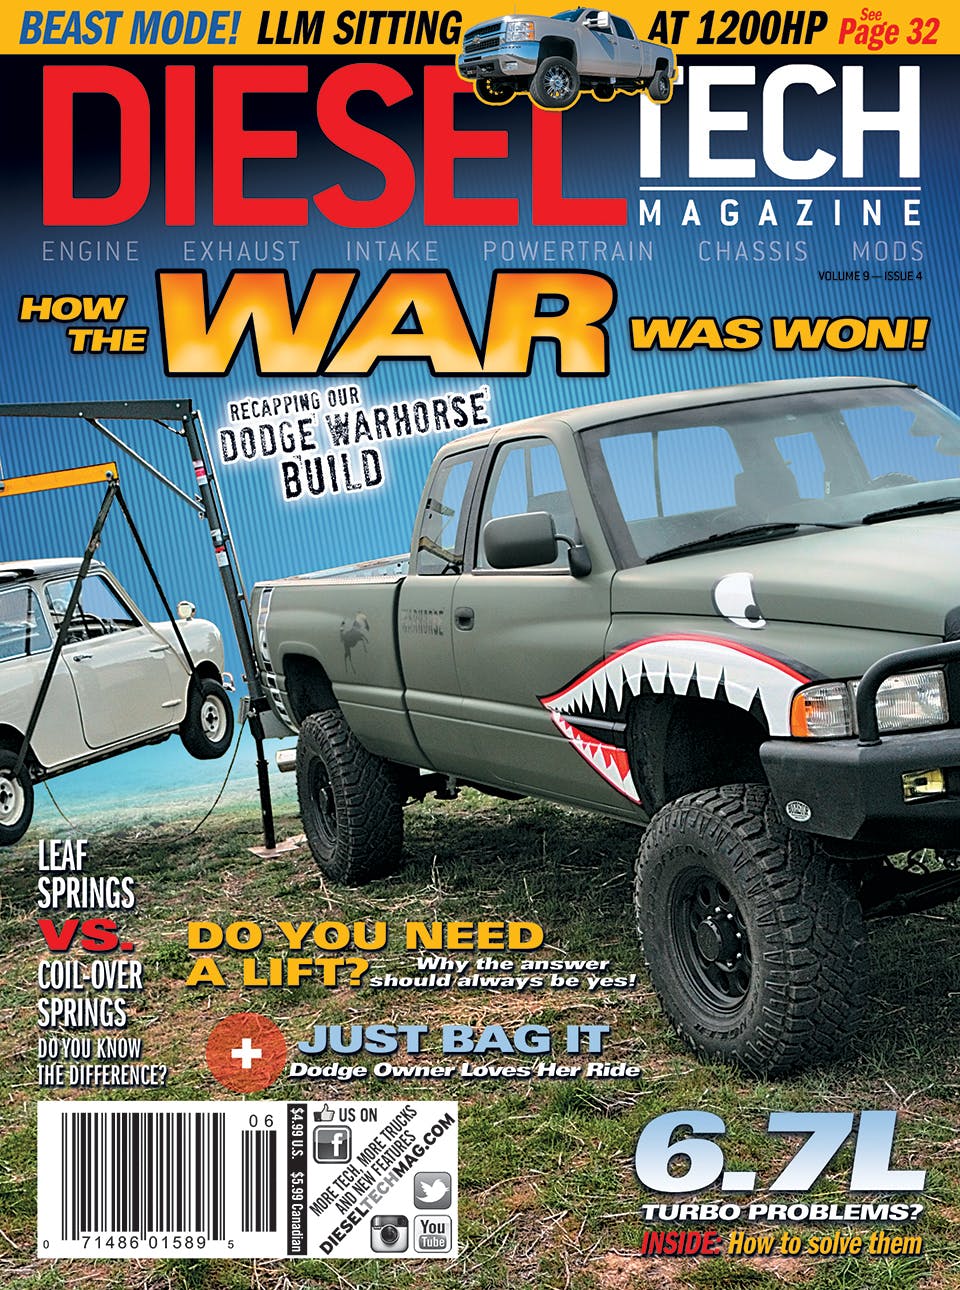 Dodge Viper, car collection, Idaho falls cars, Idaho car show, INL, Idaho National Lab, Diesel Magazine, Diesel Tech